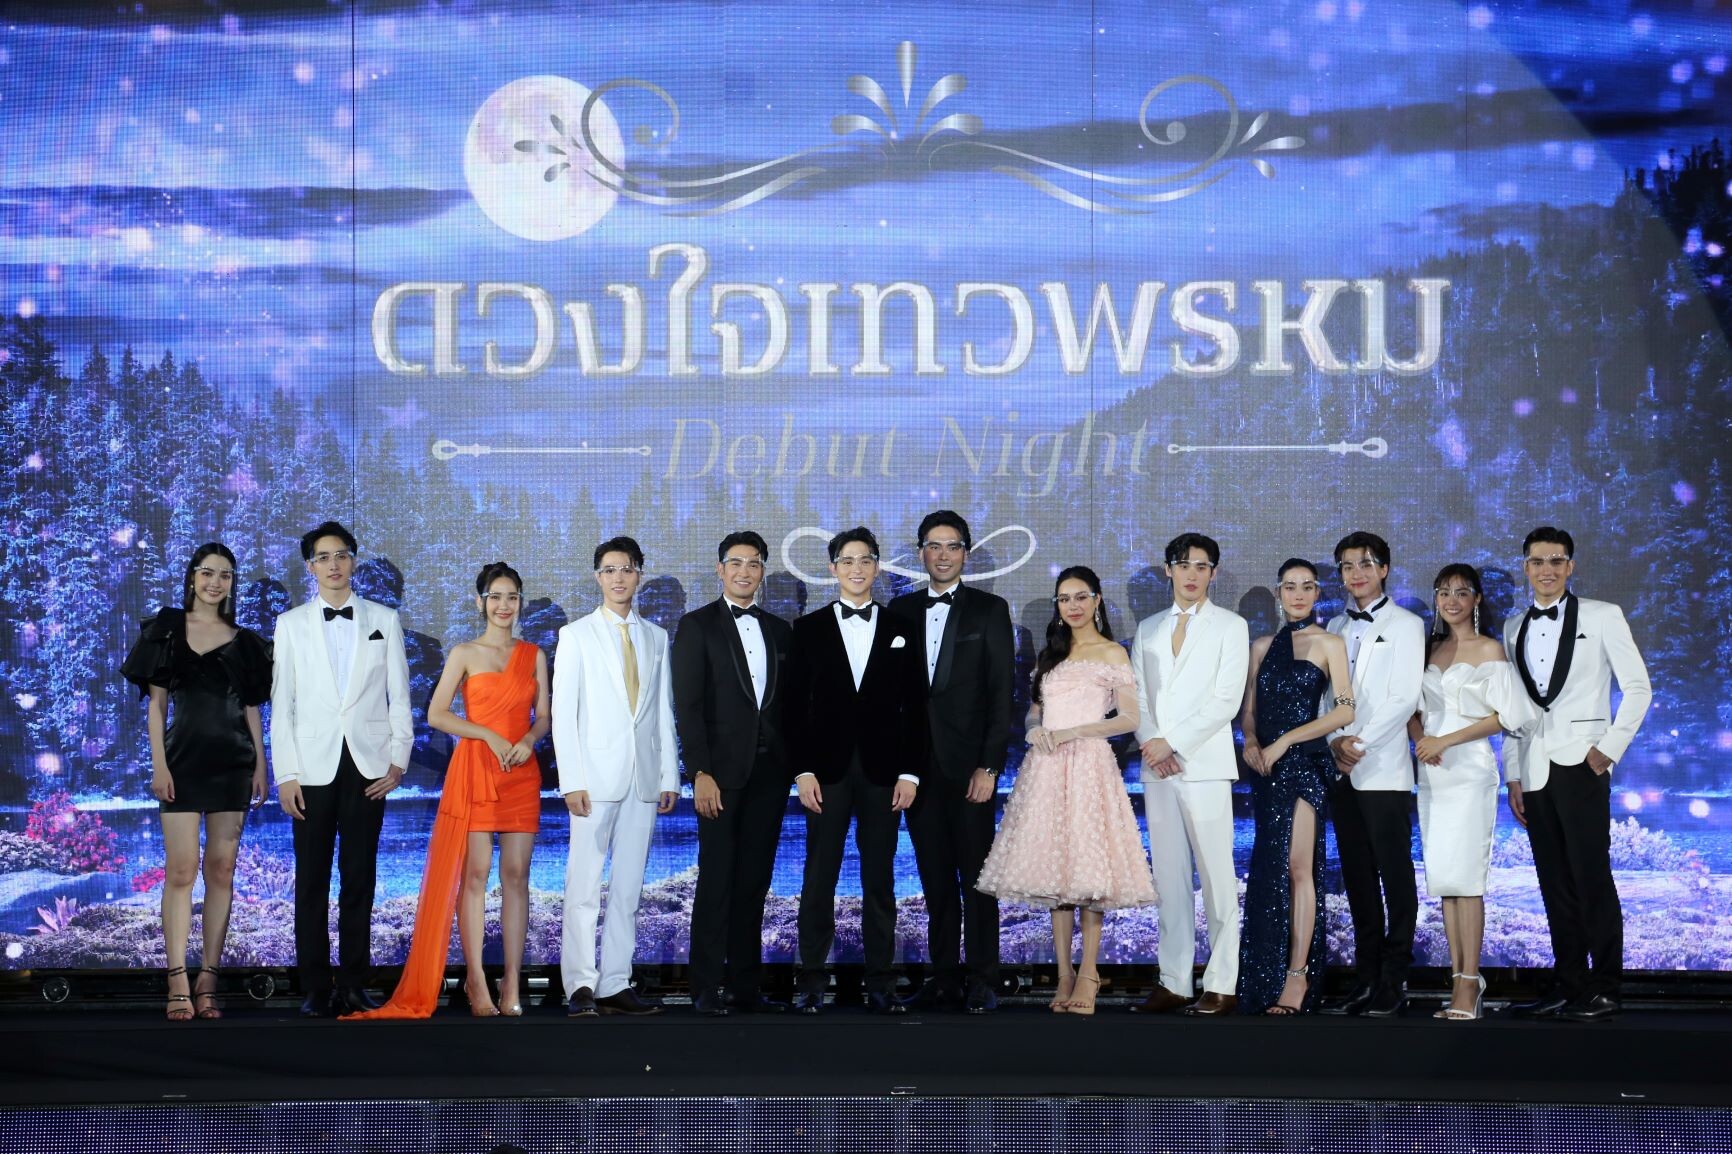 สิ้นสุดการรอคอย ช่อง 3 เปิดตัว 10 นักแสดง "ดวงใจเทวพรหม"  สุดปังแรงติดเทรนด์ทวิตเตอร์ประเทศไทย อันดับ 1 !